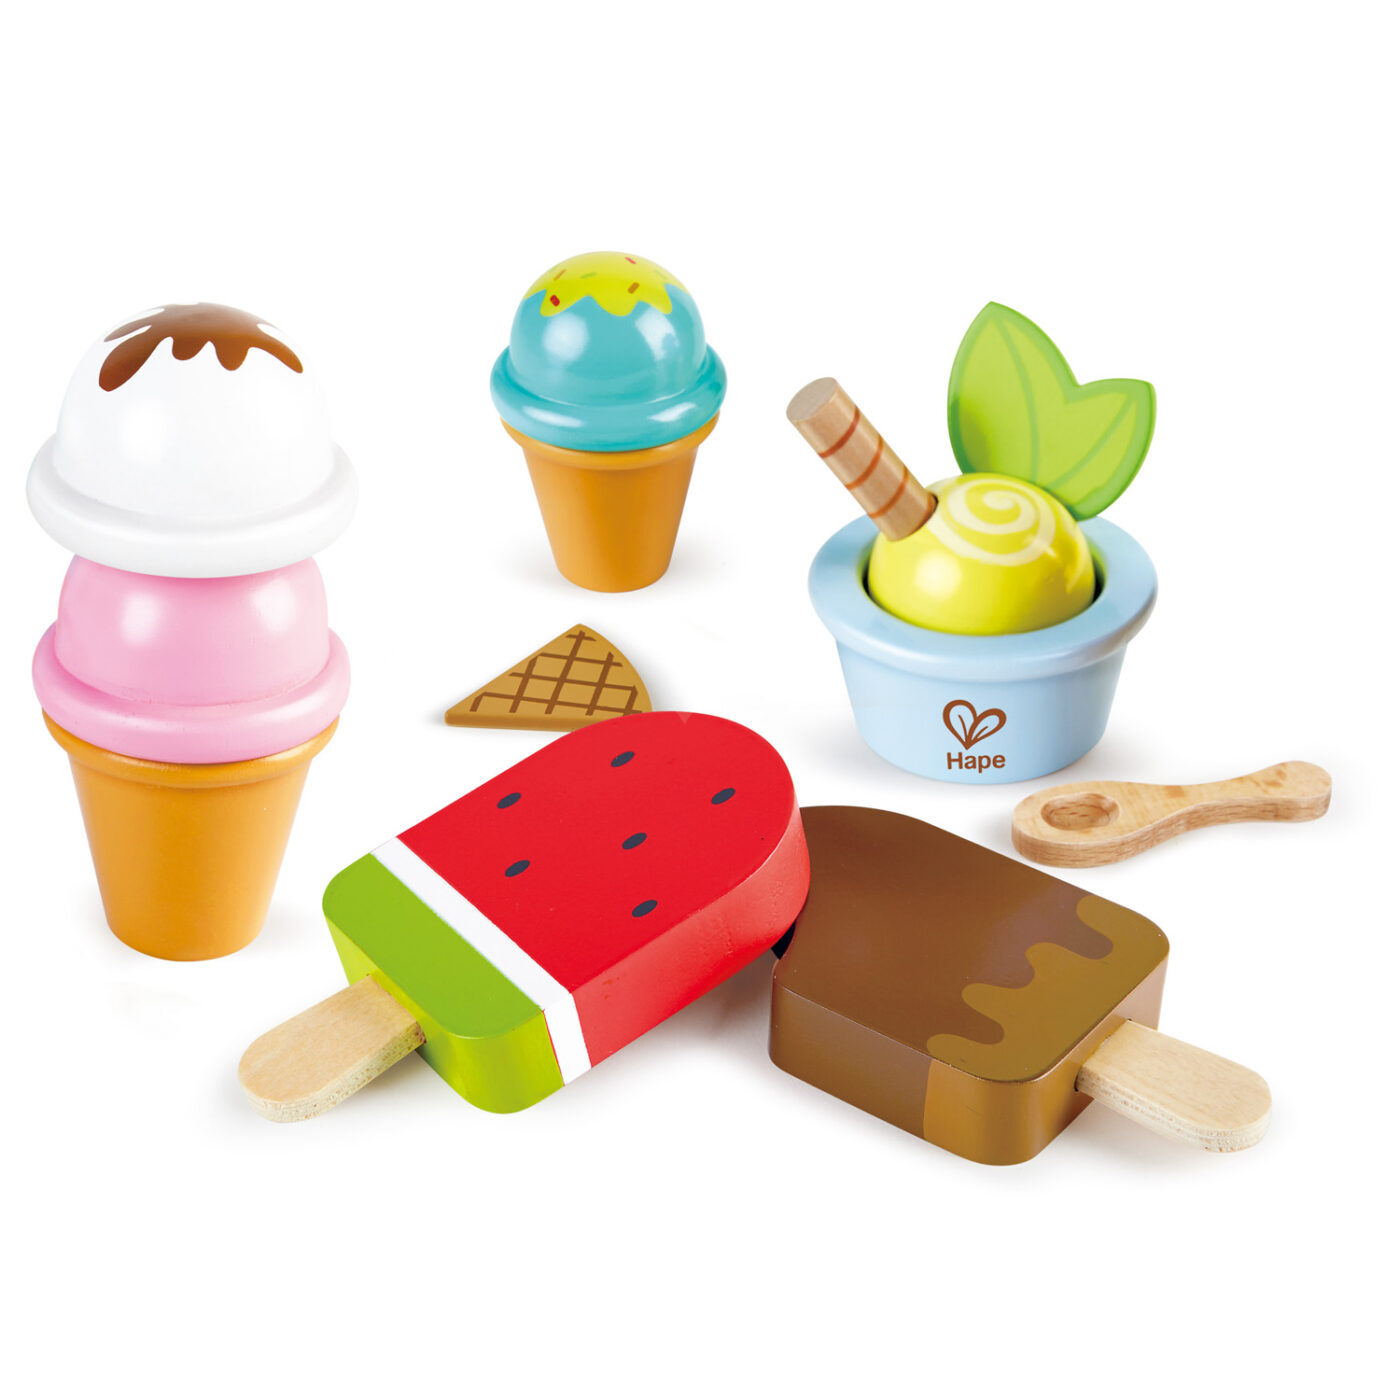 アイスクリームセットの商品画像